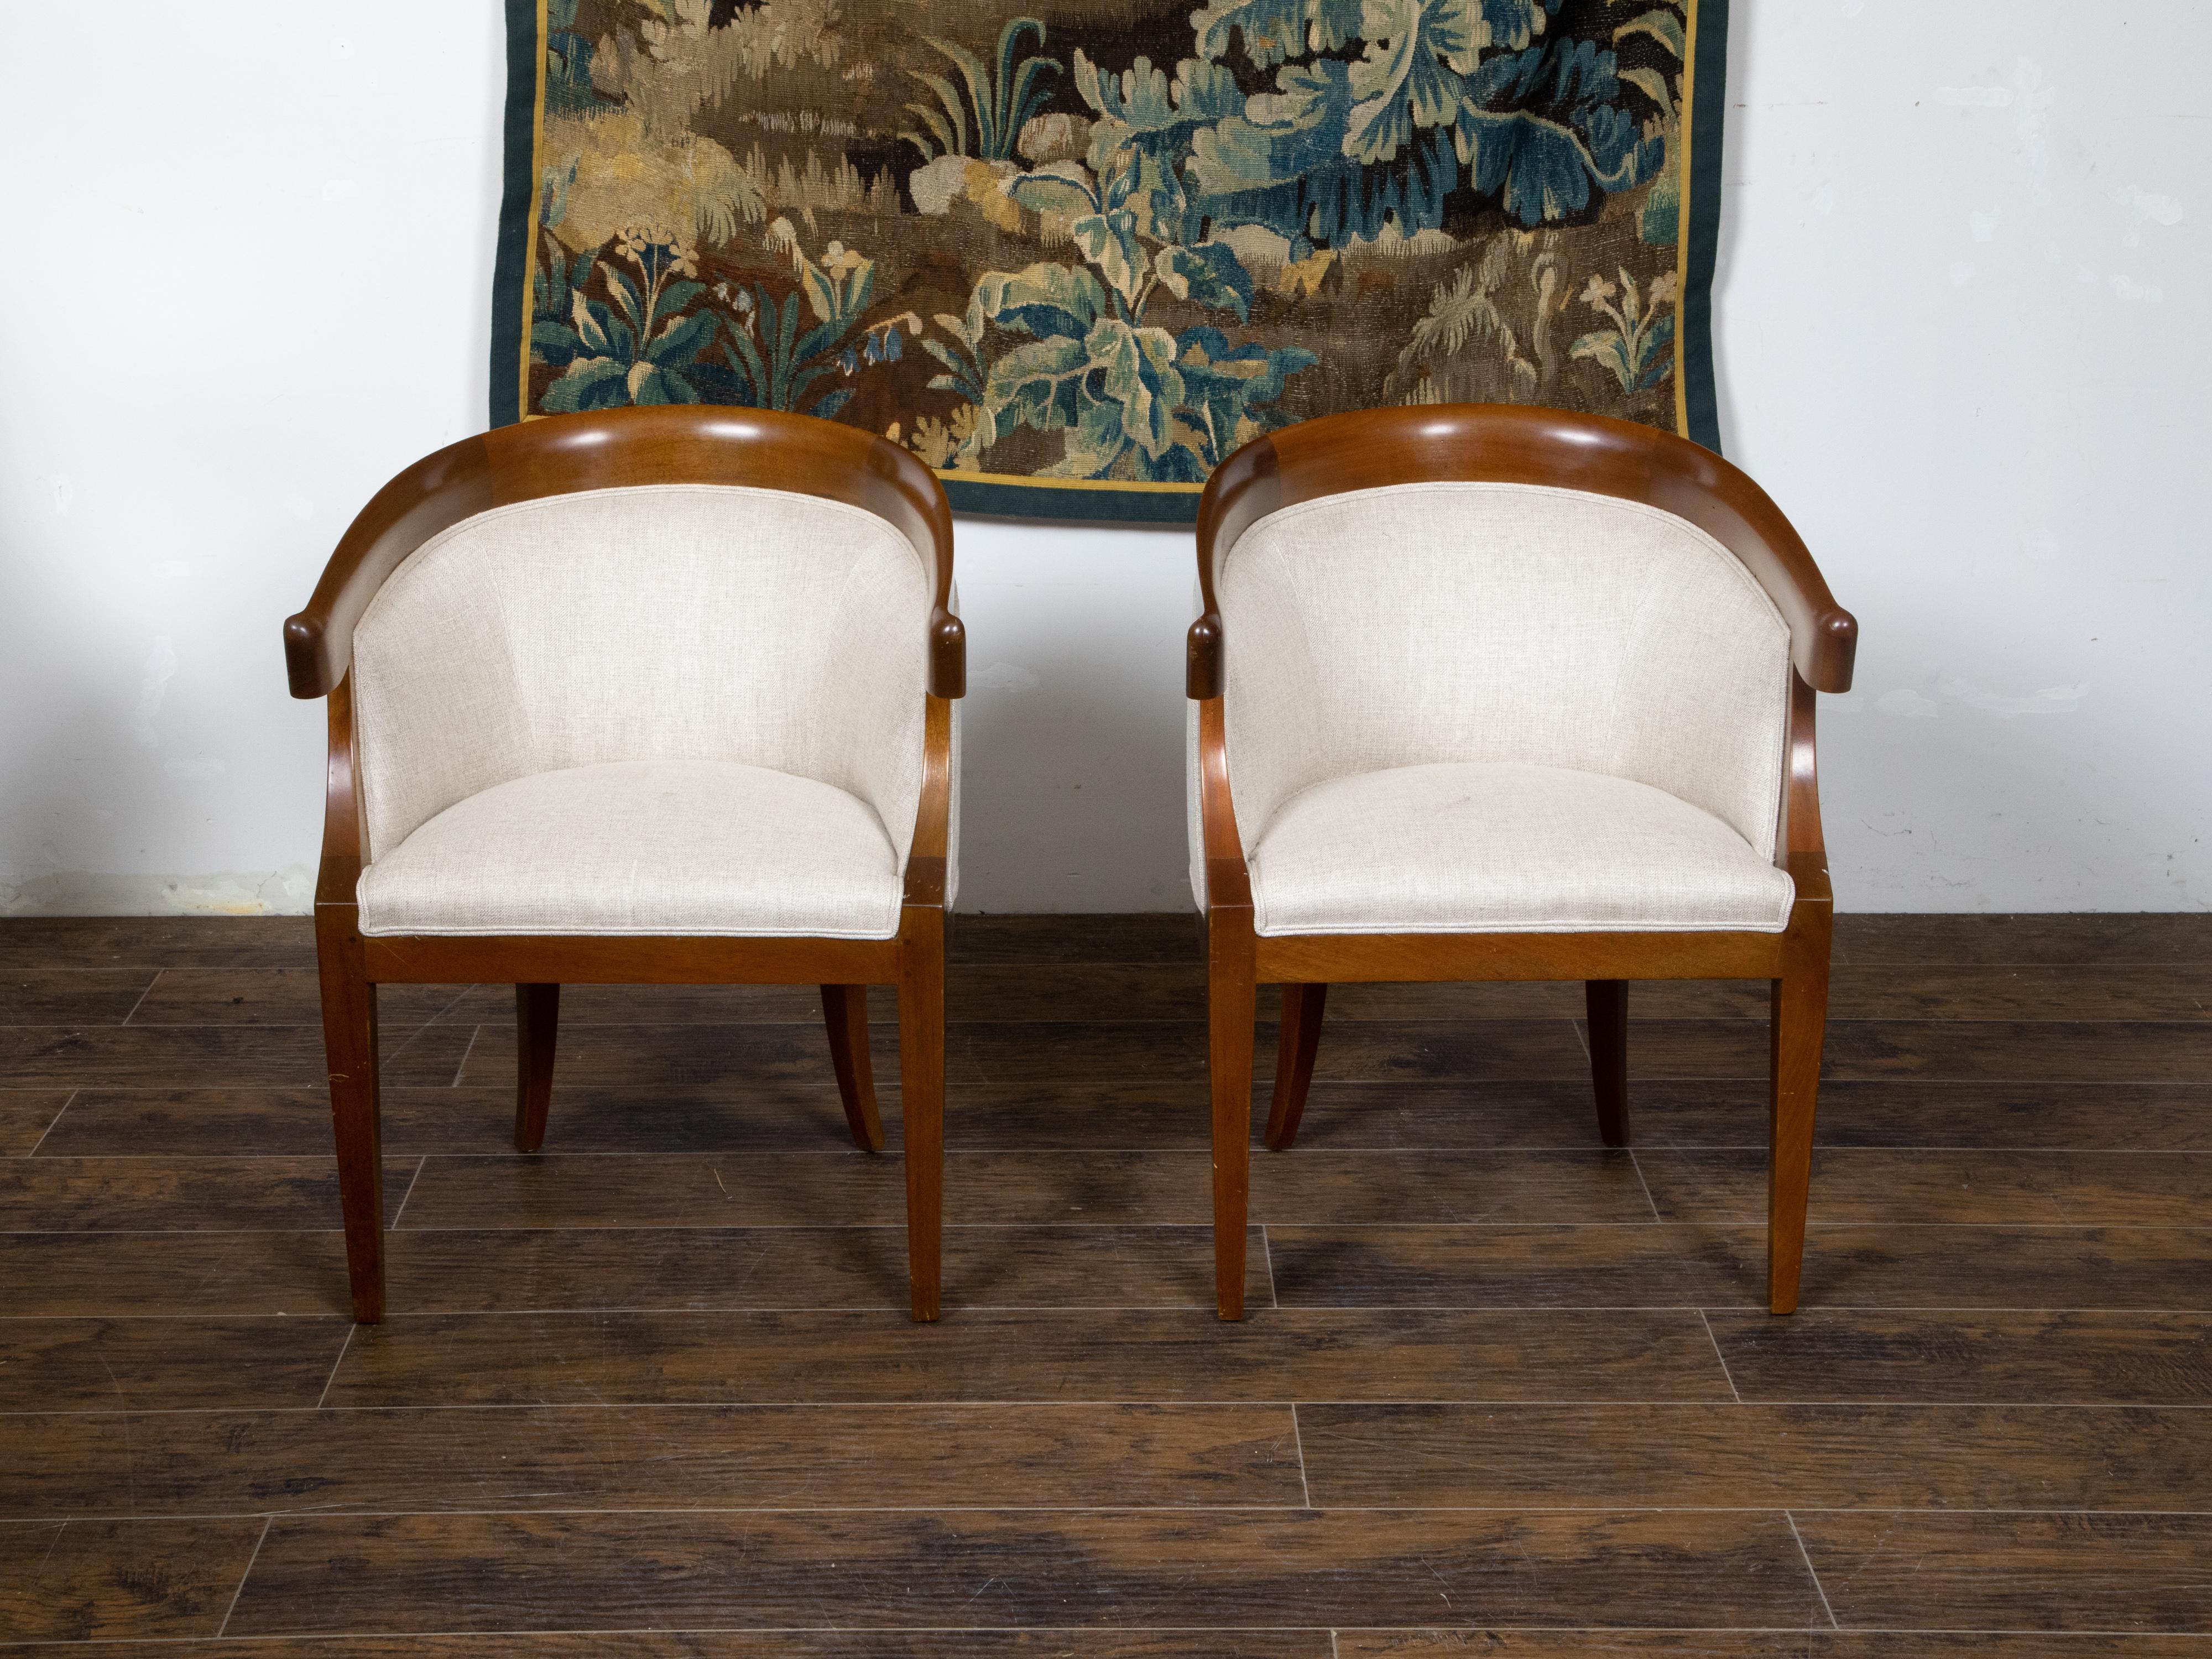 Une paire de fauteuils français en noyer de style Art Déco du début du 20ème siècle, avec un dossier en fer à cheval, des pieds en sabre et une tapisserie en lin. Créée en France durant la période Art Déco du deuxième quart du 20ème siècle, cette